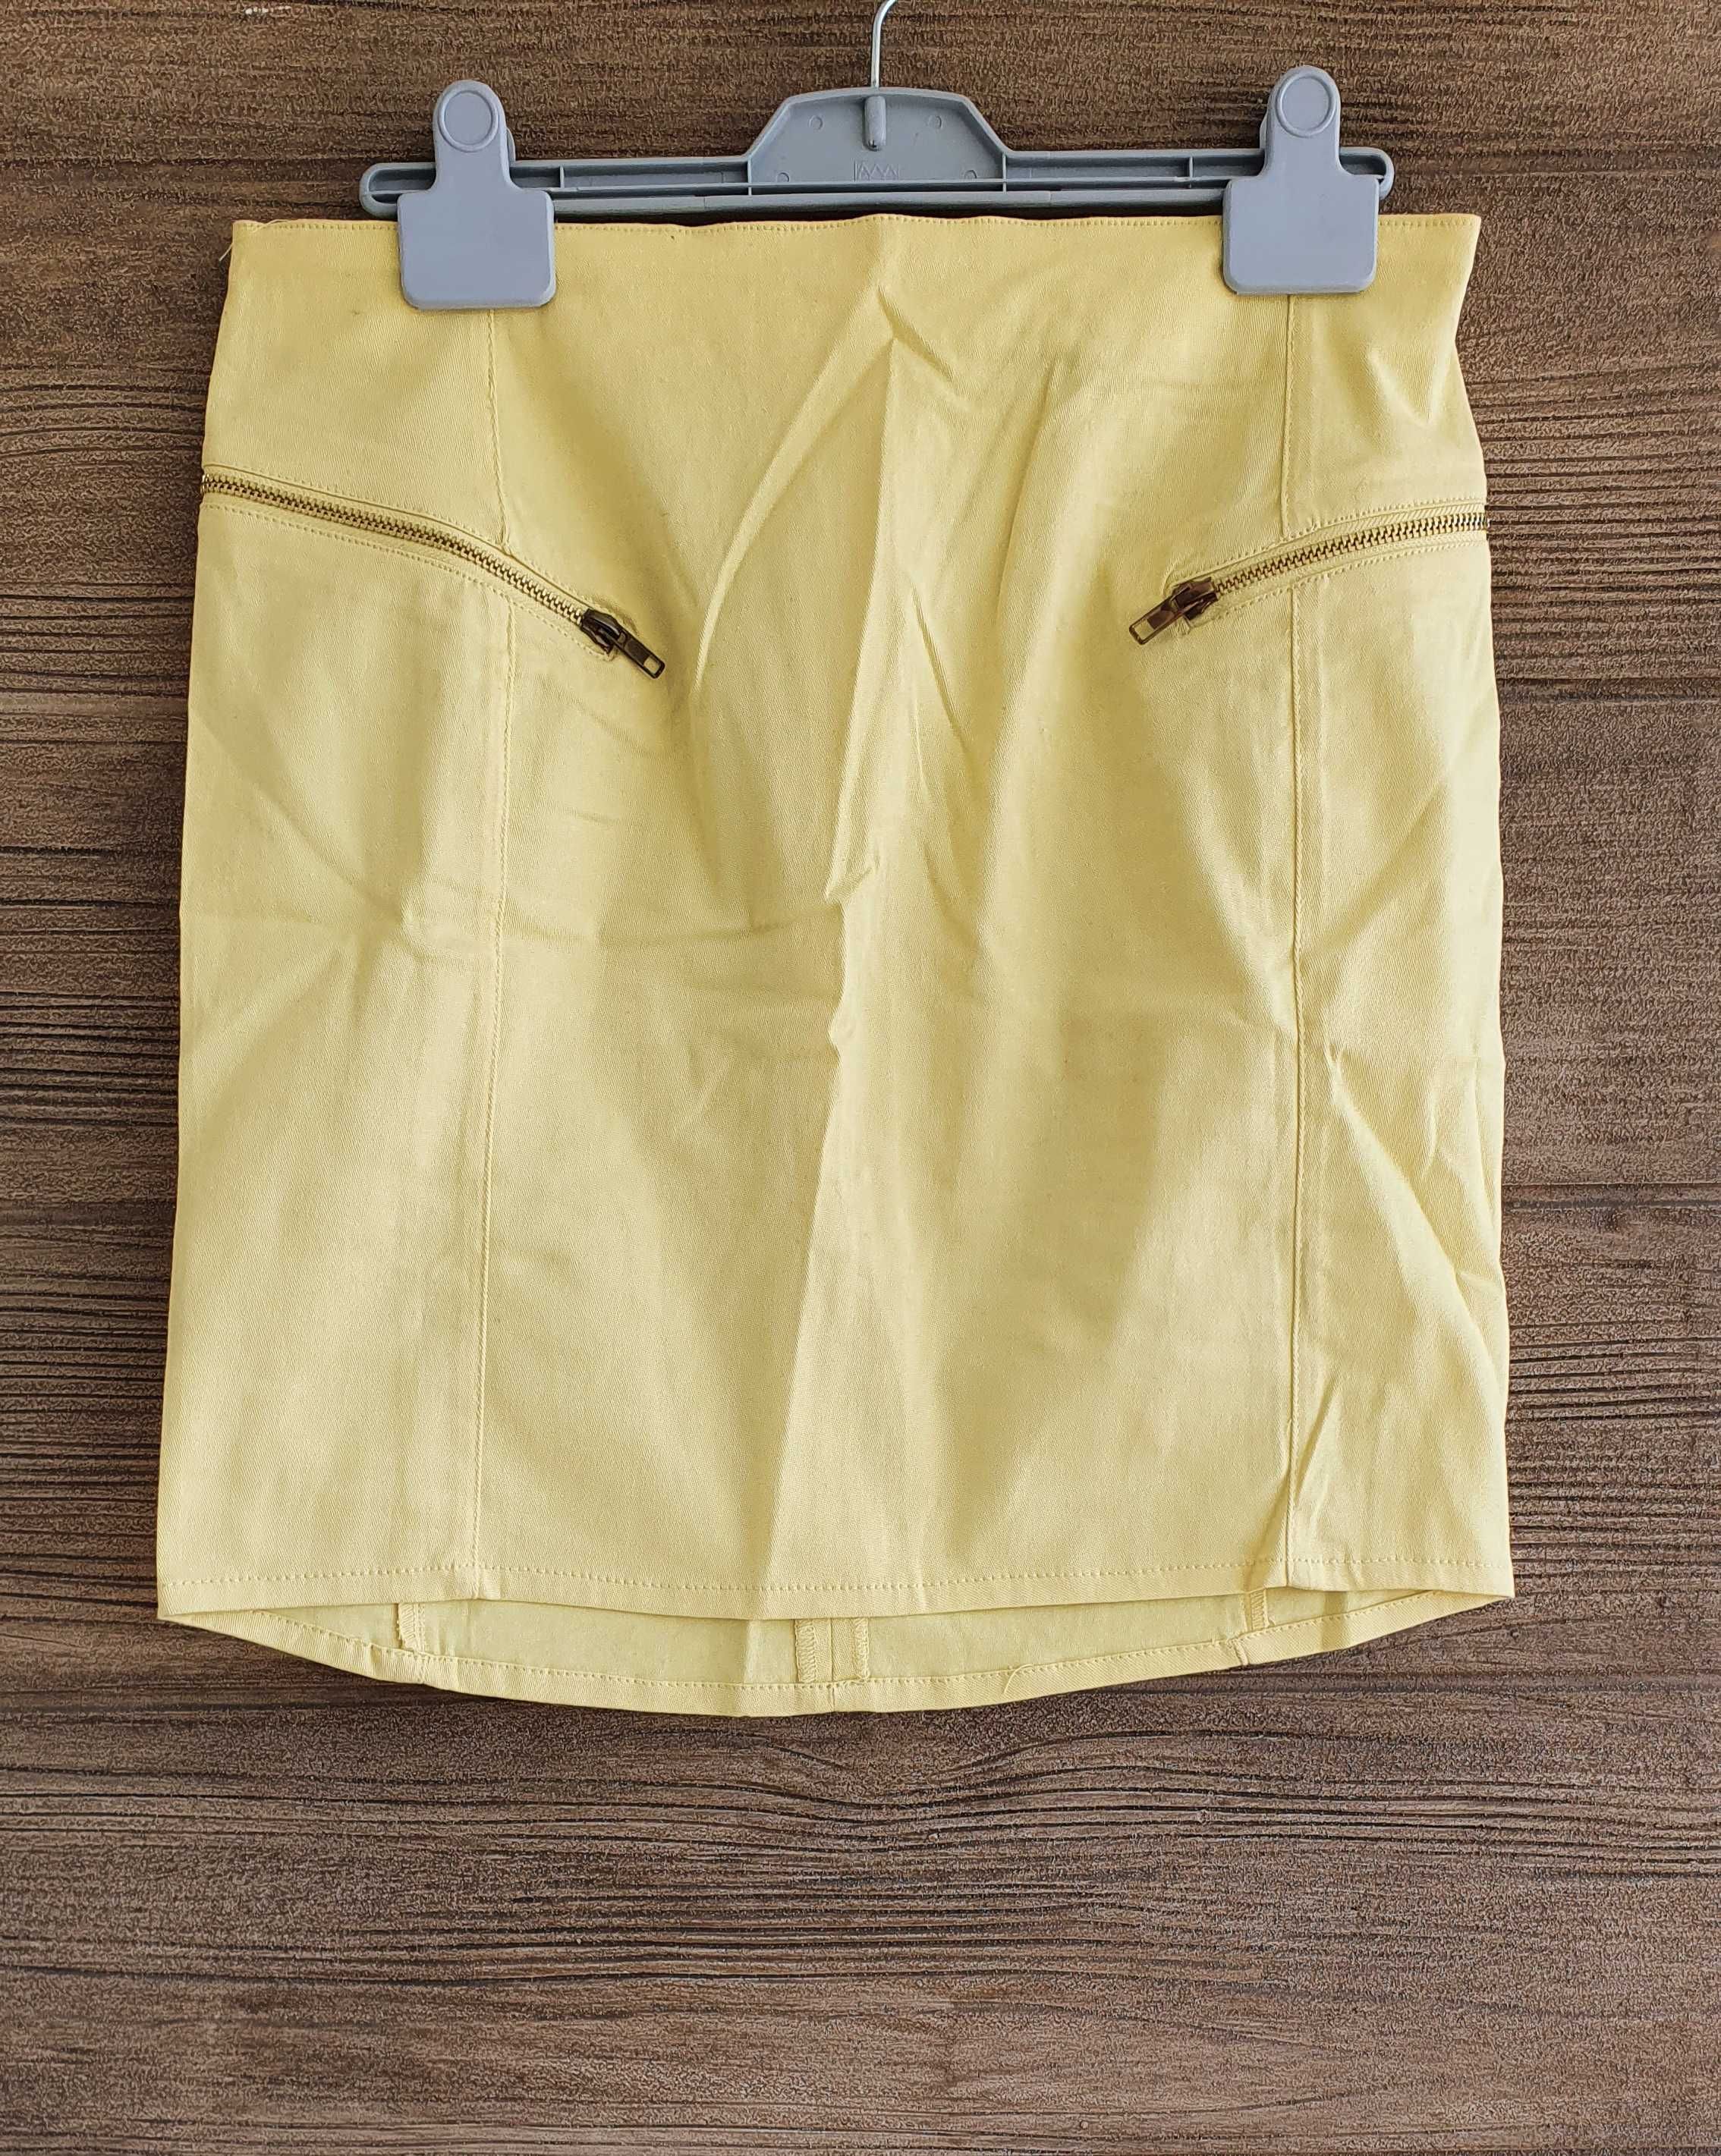 Spódnica spódniczka żółta zamki French Collection M 38